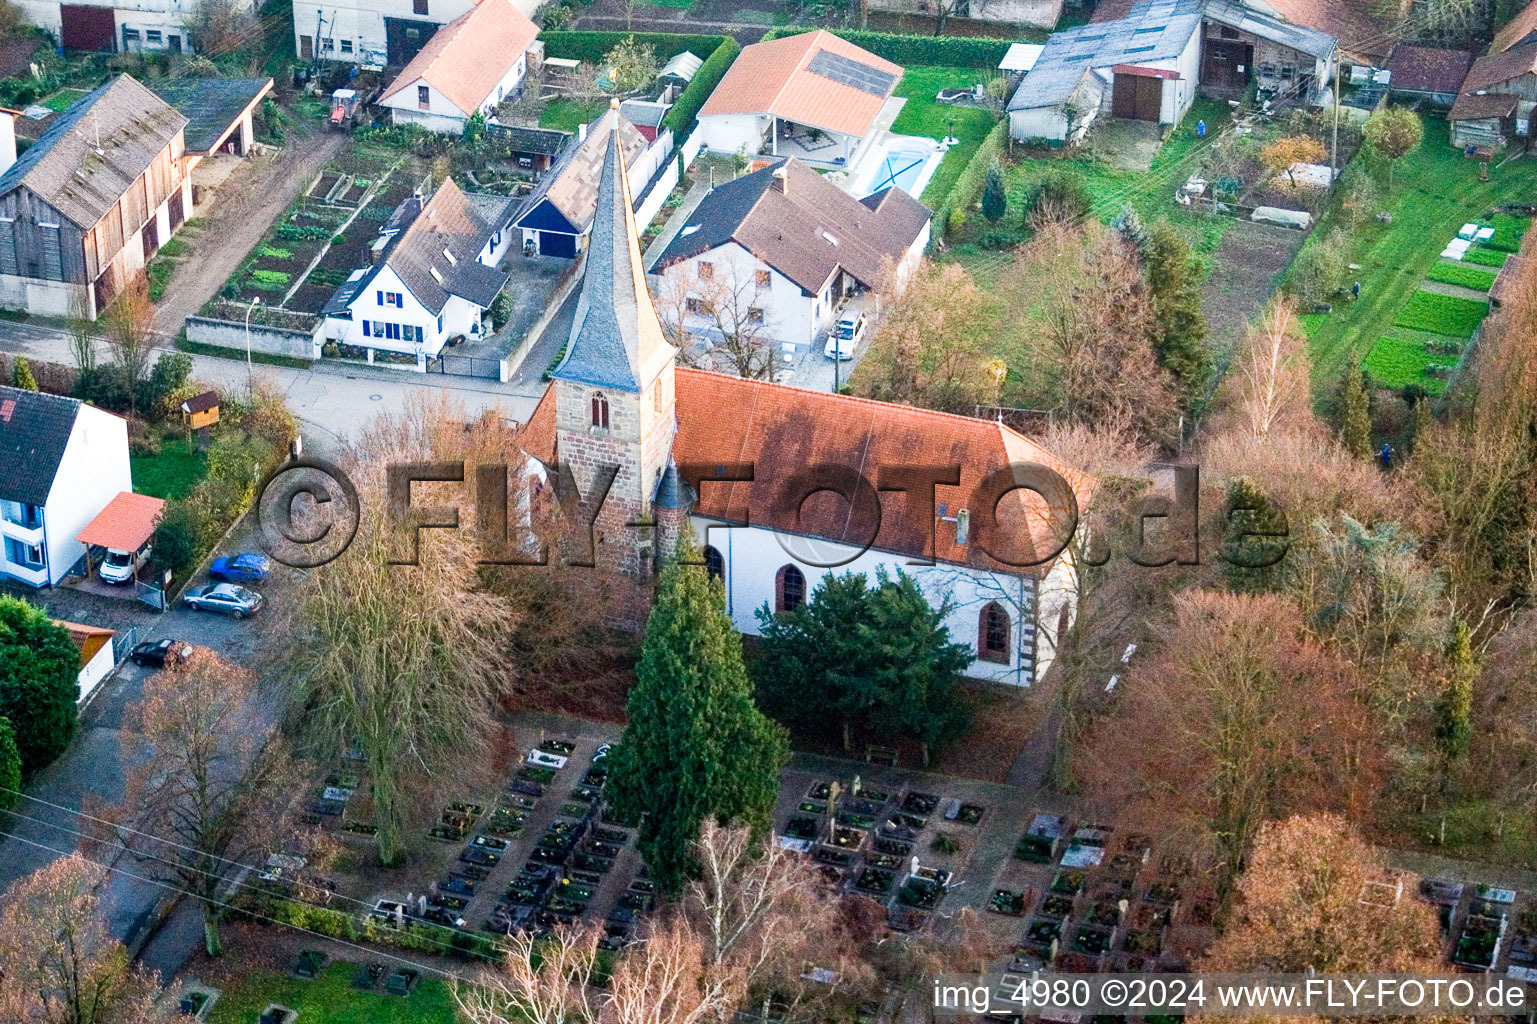 Vue aérienne de L'église de Wolfgang au centre du village à Freckenfeld dans le département Rhénanie-Palatinat, Allemagne